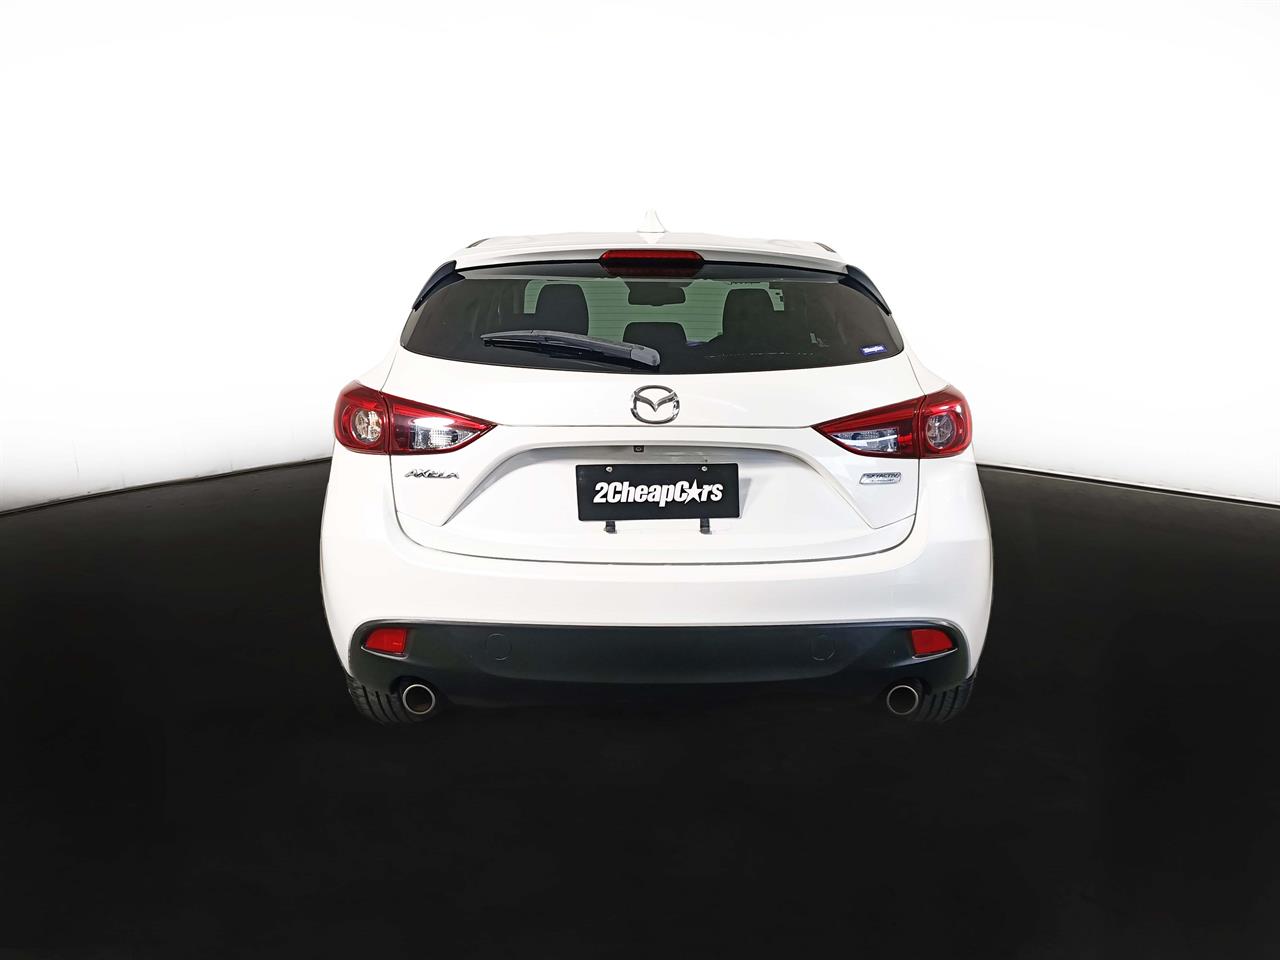 2014 Mazda Axela 3 Late Shape 2.0